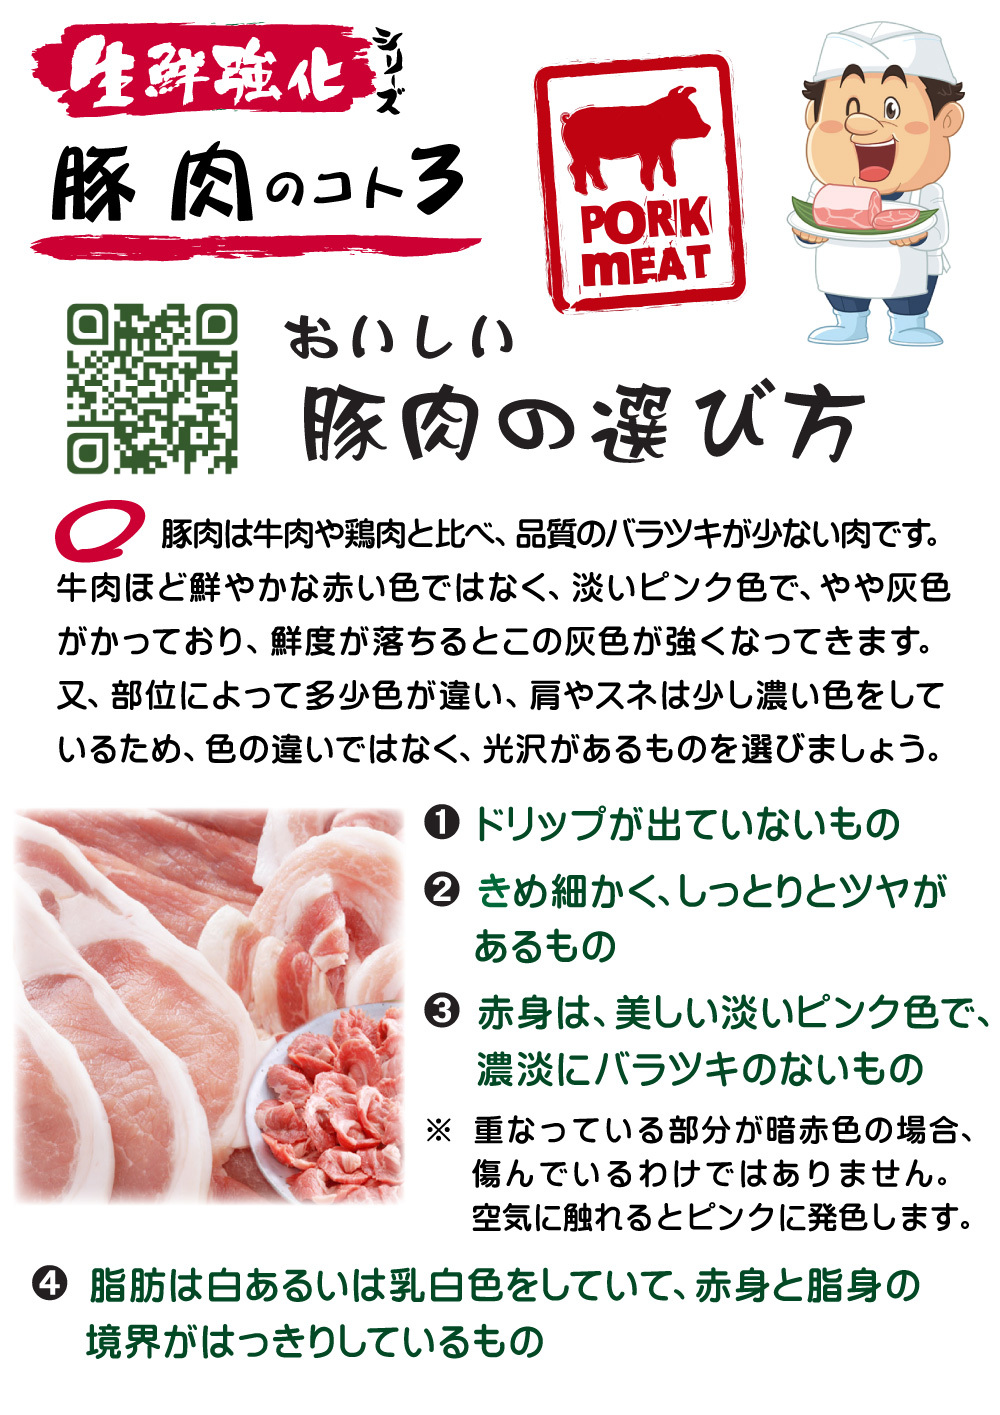 5~6_V109-豚肉③(カラー)1